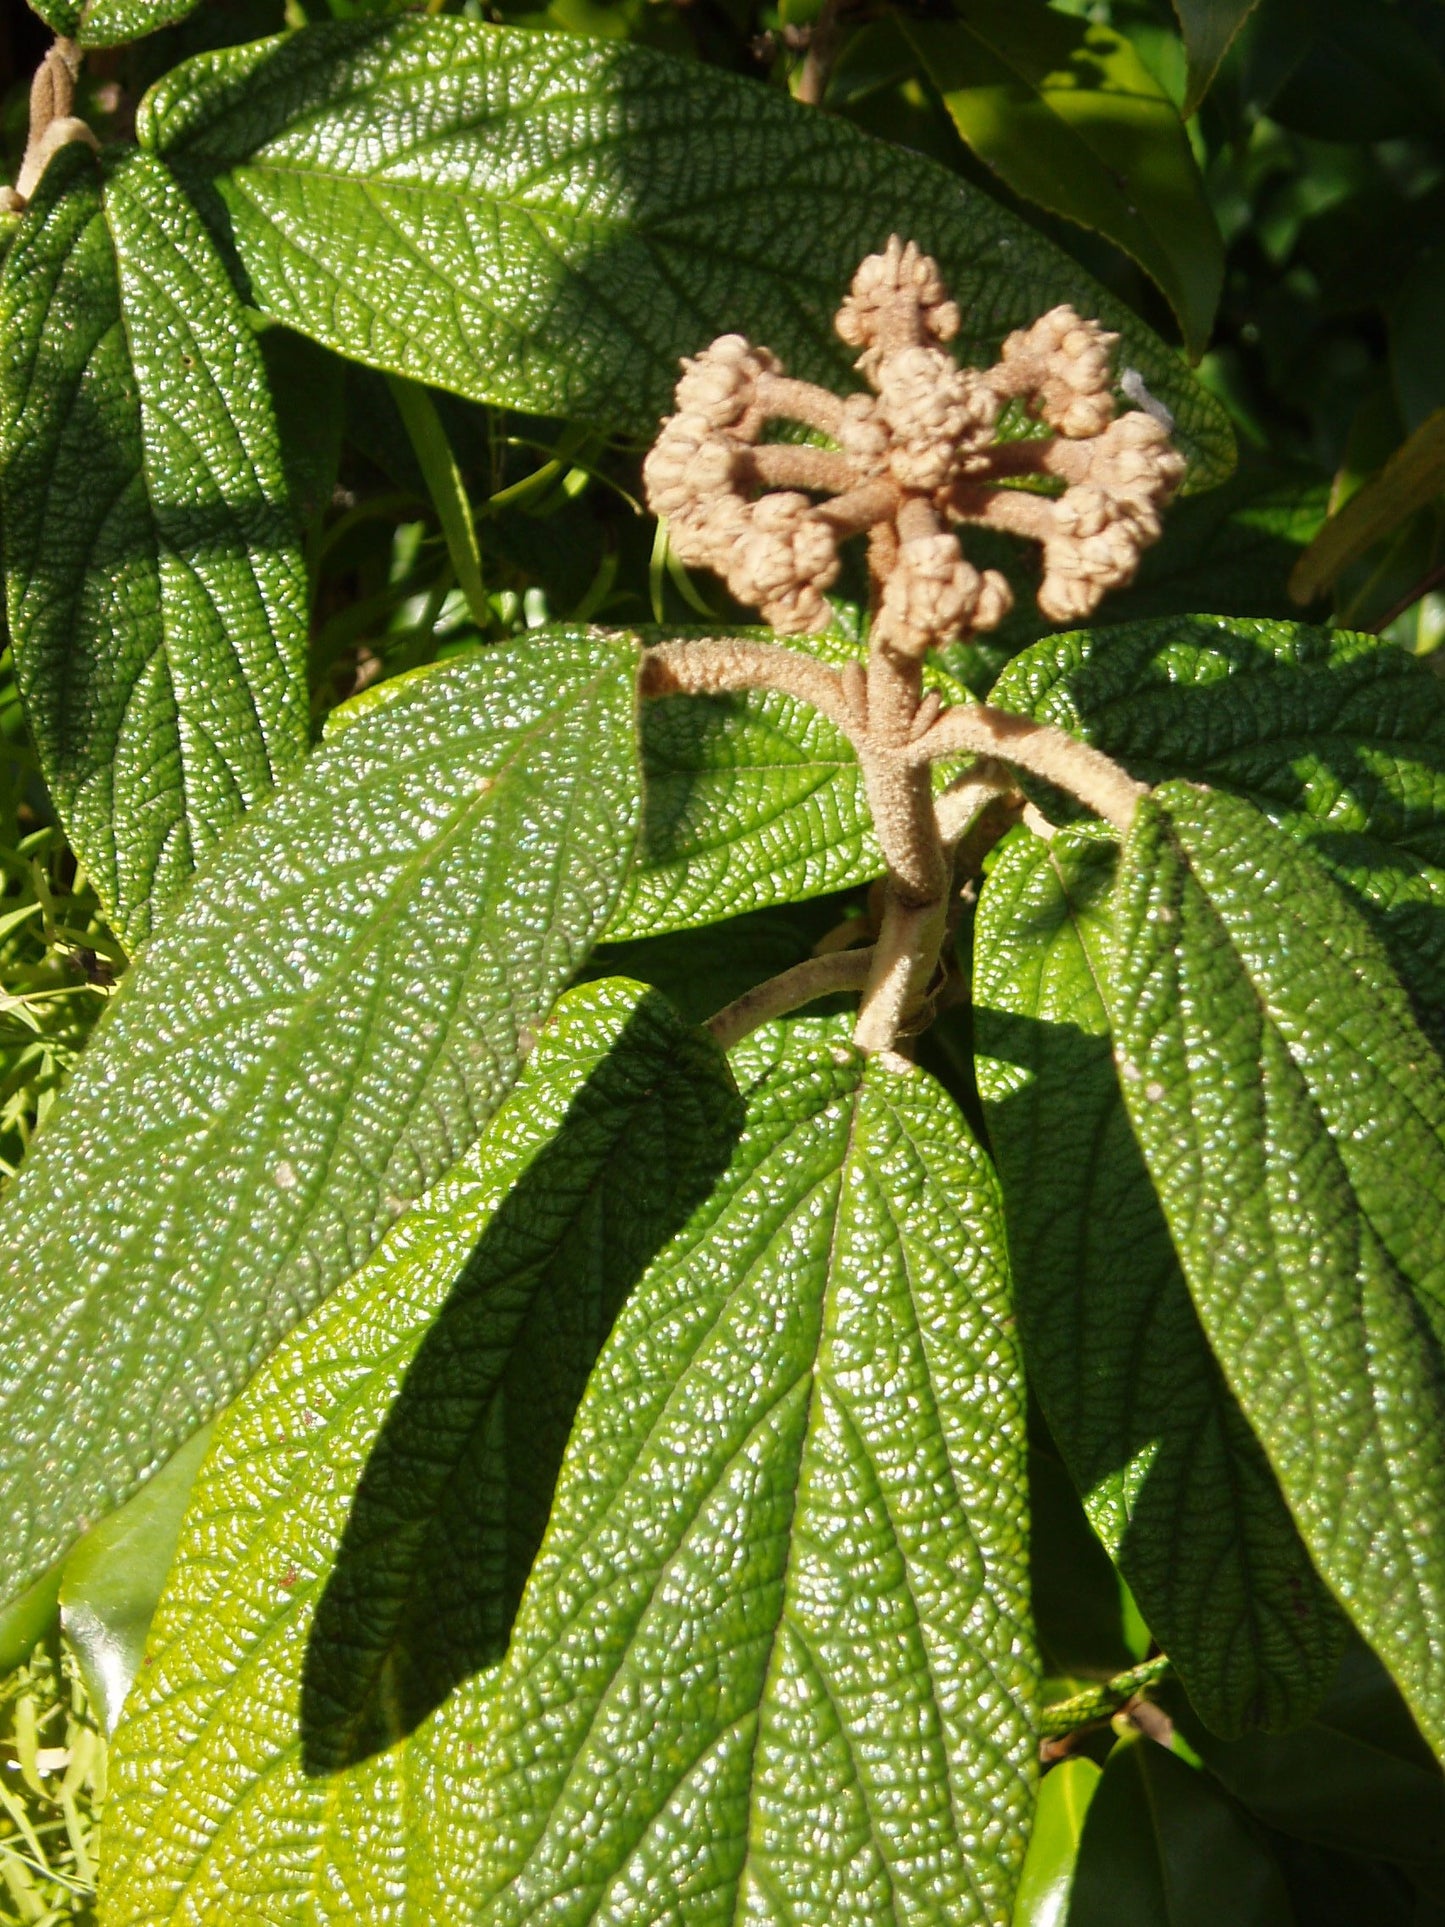 Leather-leaf Viburnum Leatherleaf Arrowwood (Viburnum rhytidophyllum)